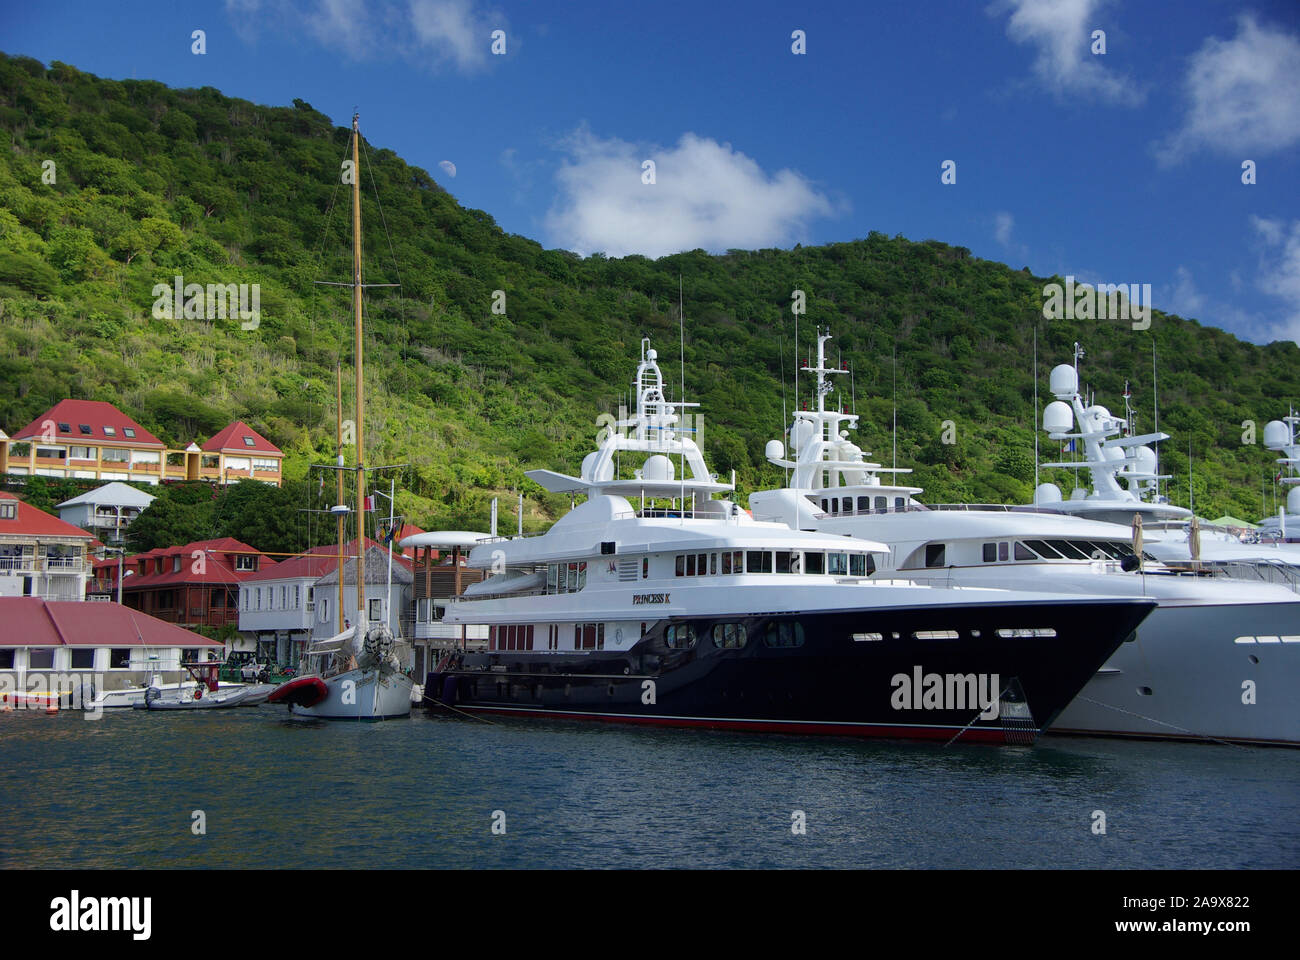 Karibik, Französiche Antillen, Saint Barthelemy (St. Barth), Gustavia, Nobeljachten im Hafen Stock Photo